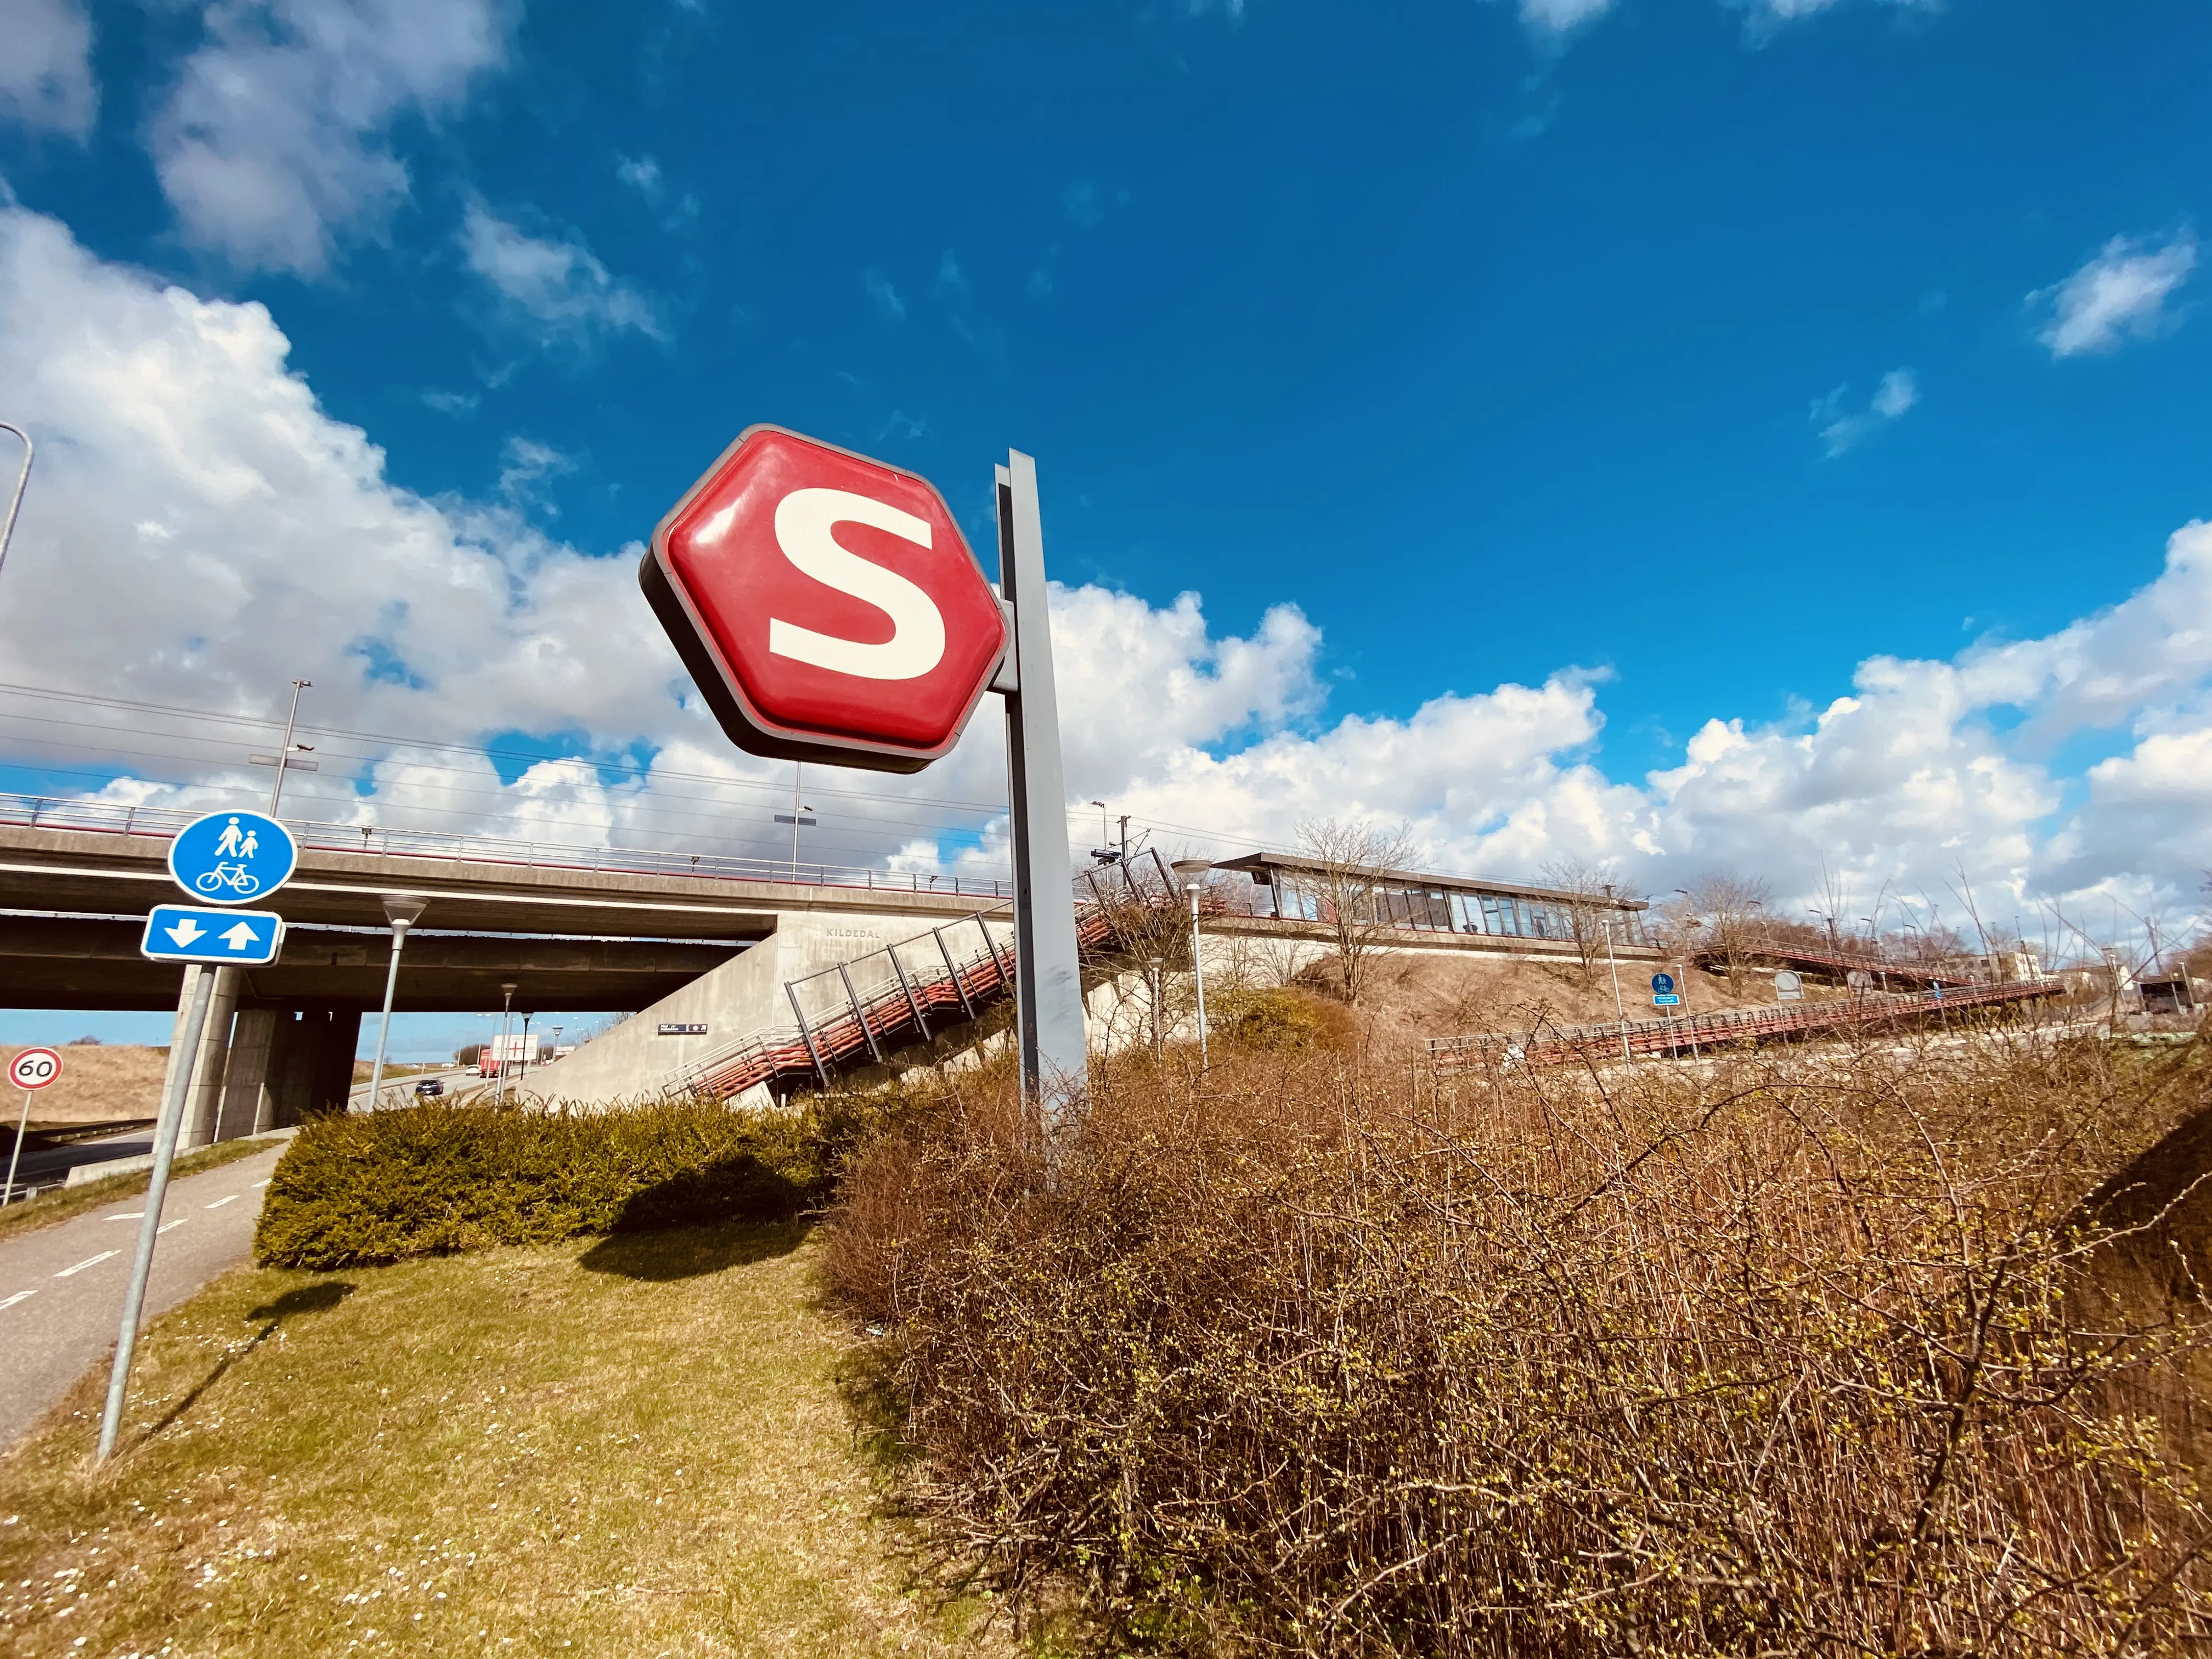 Billede af Kildedal S-togstrinbræt.